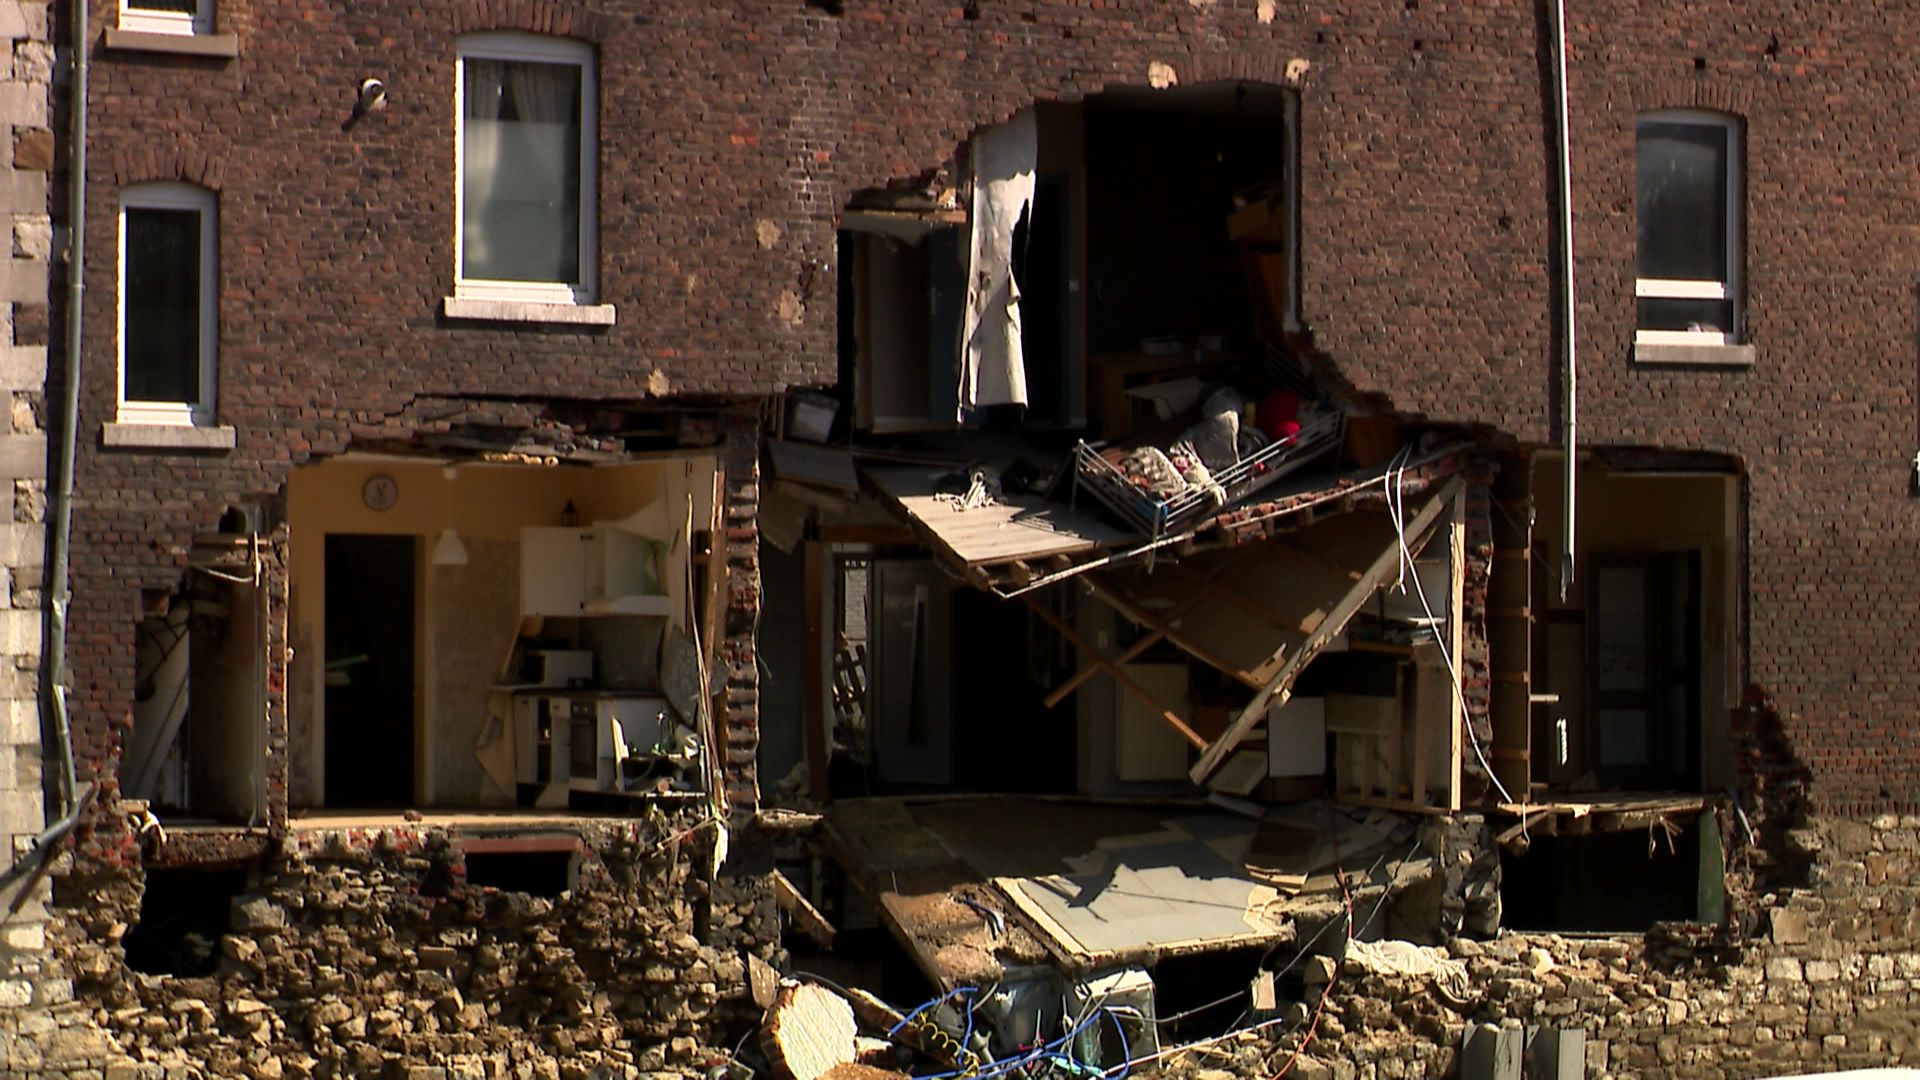 Des milliers de Belges se retrouvent sans logement après les inondations.